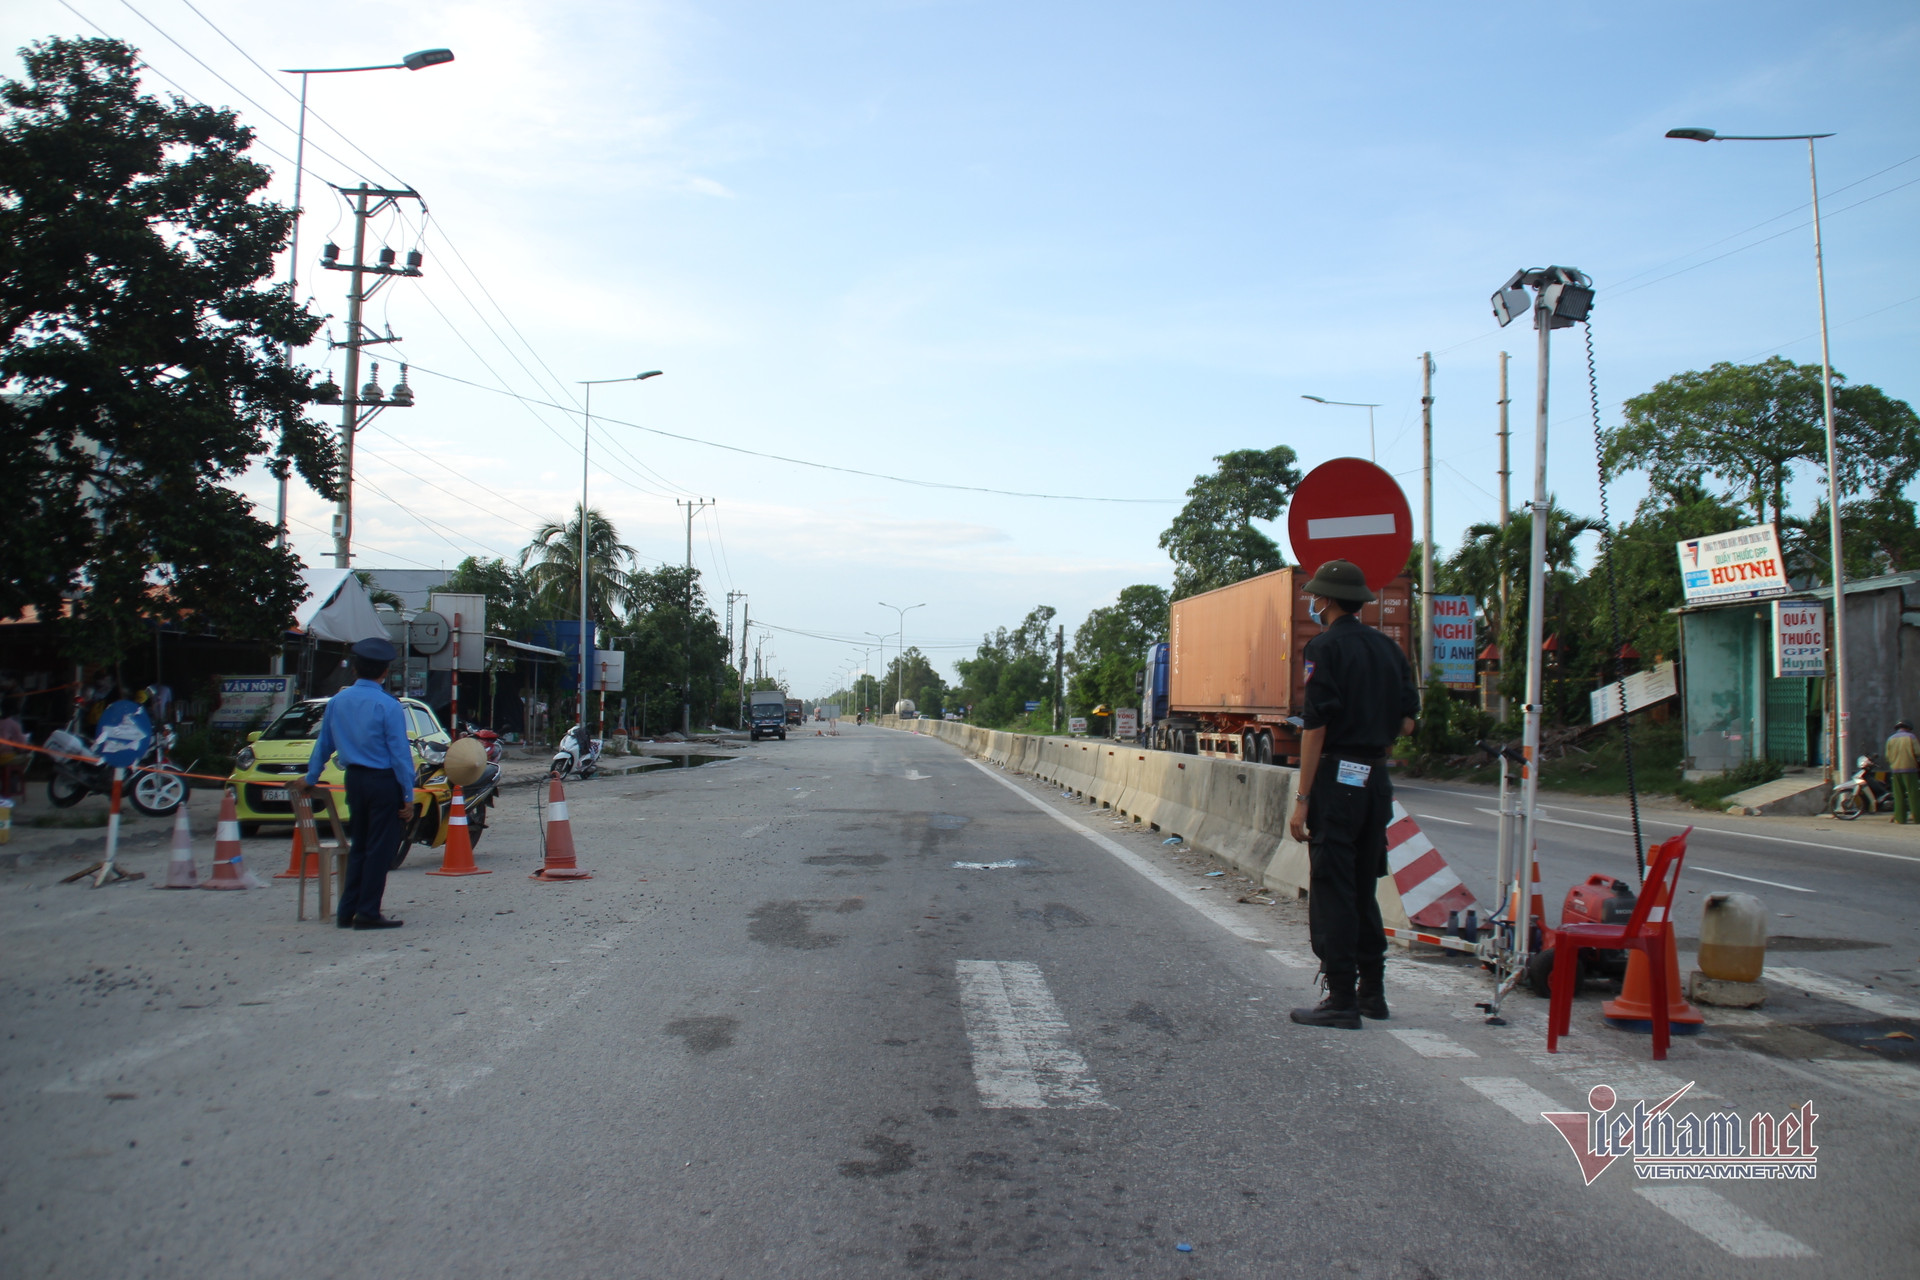 Ô tô qua chốt ở Quảng Ngãi vẫn được kiểm soát nghiêm ngặt